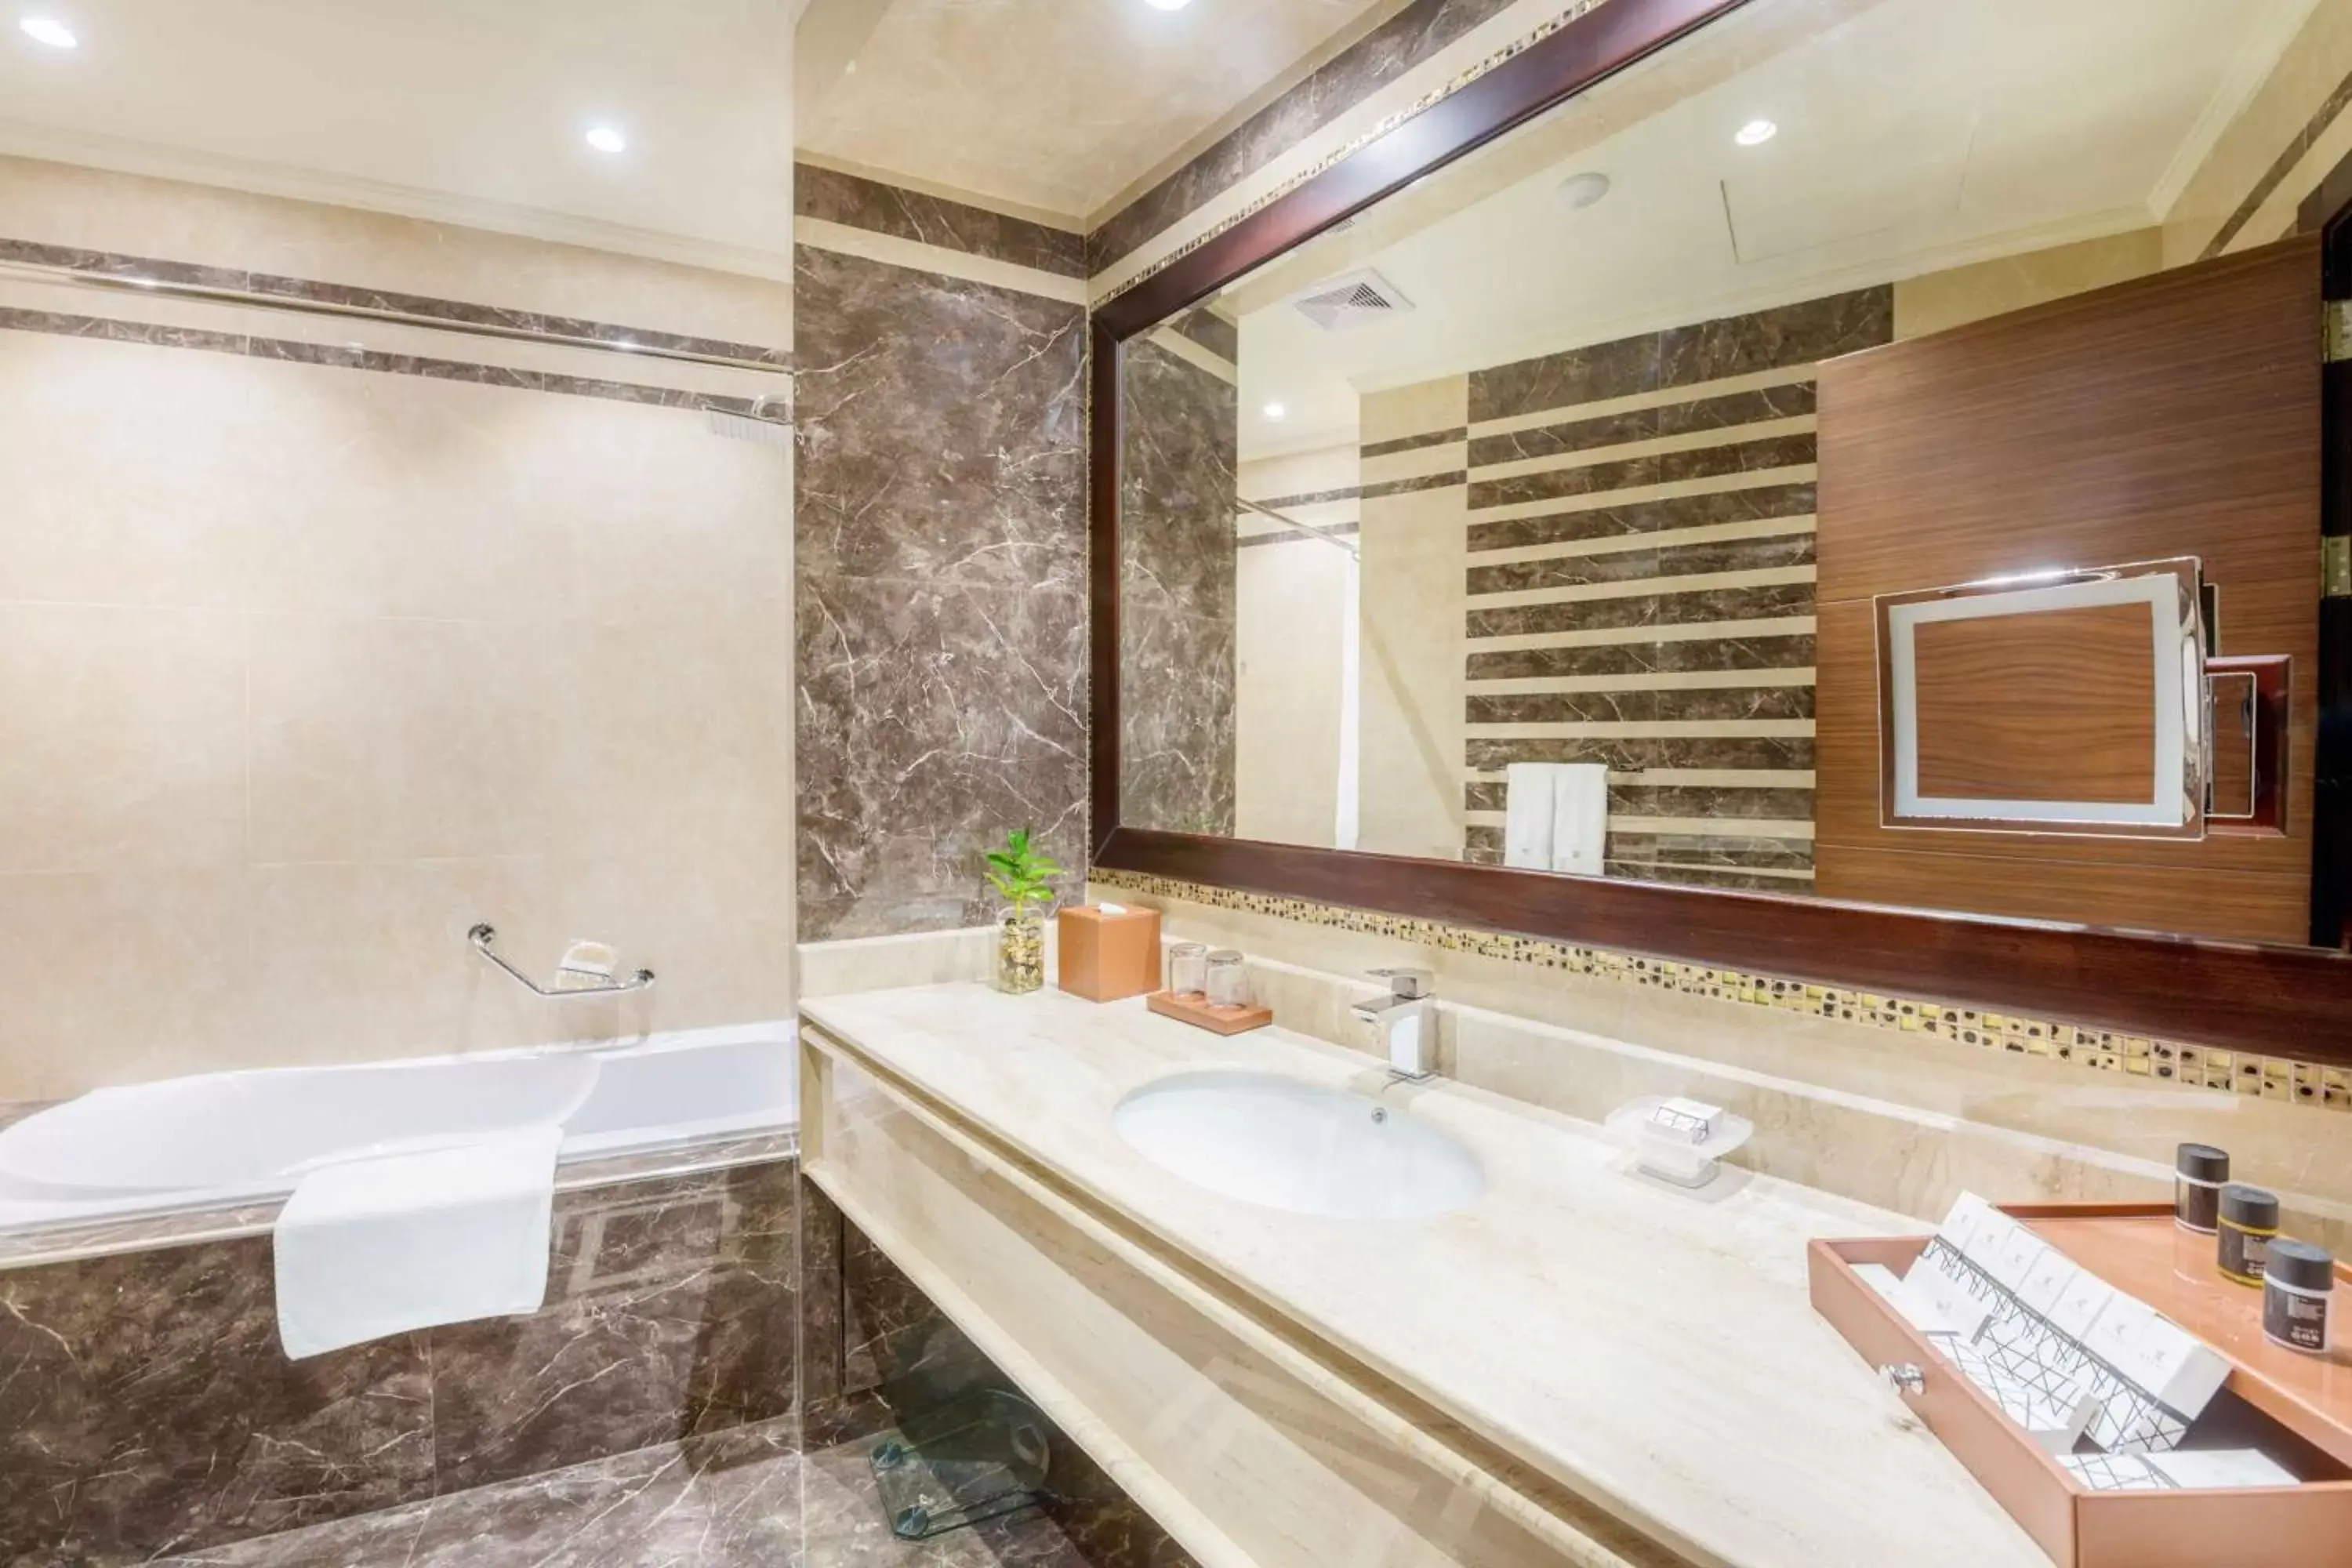 Bathroom in Bayat Hotel